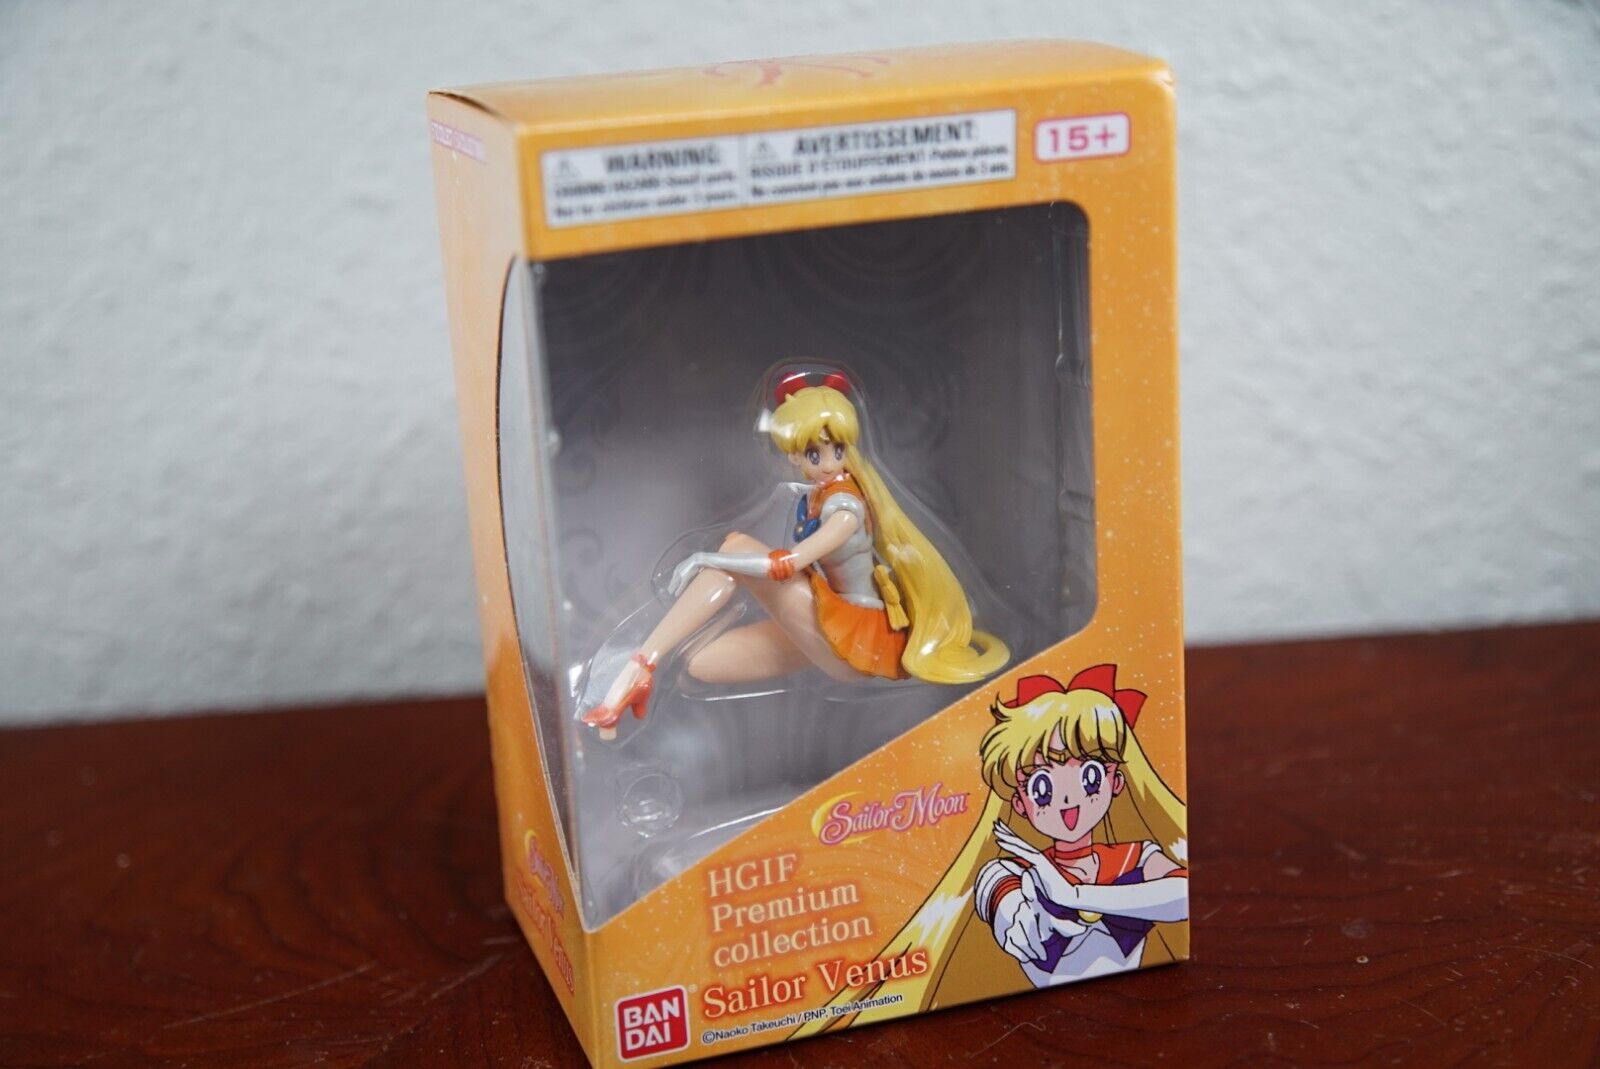 Bandai HGIF Premium Collection Sailor Venus figure in Box